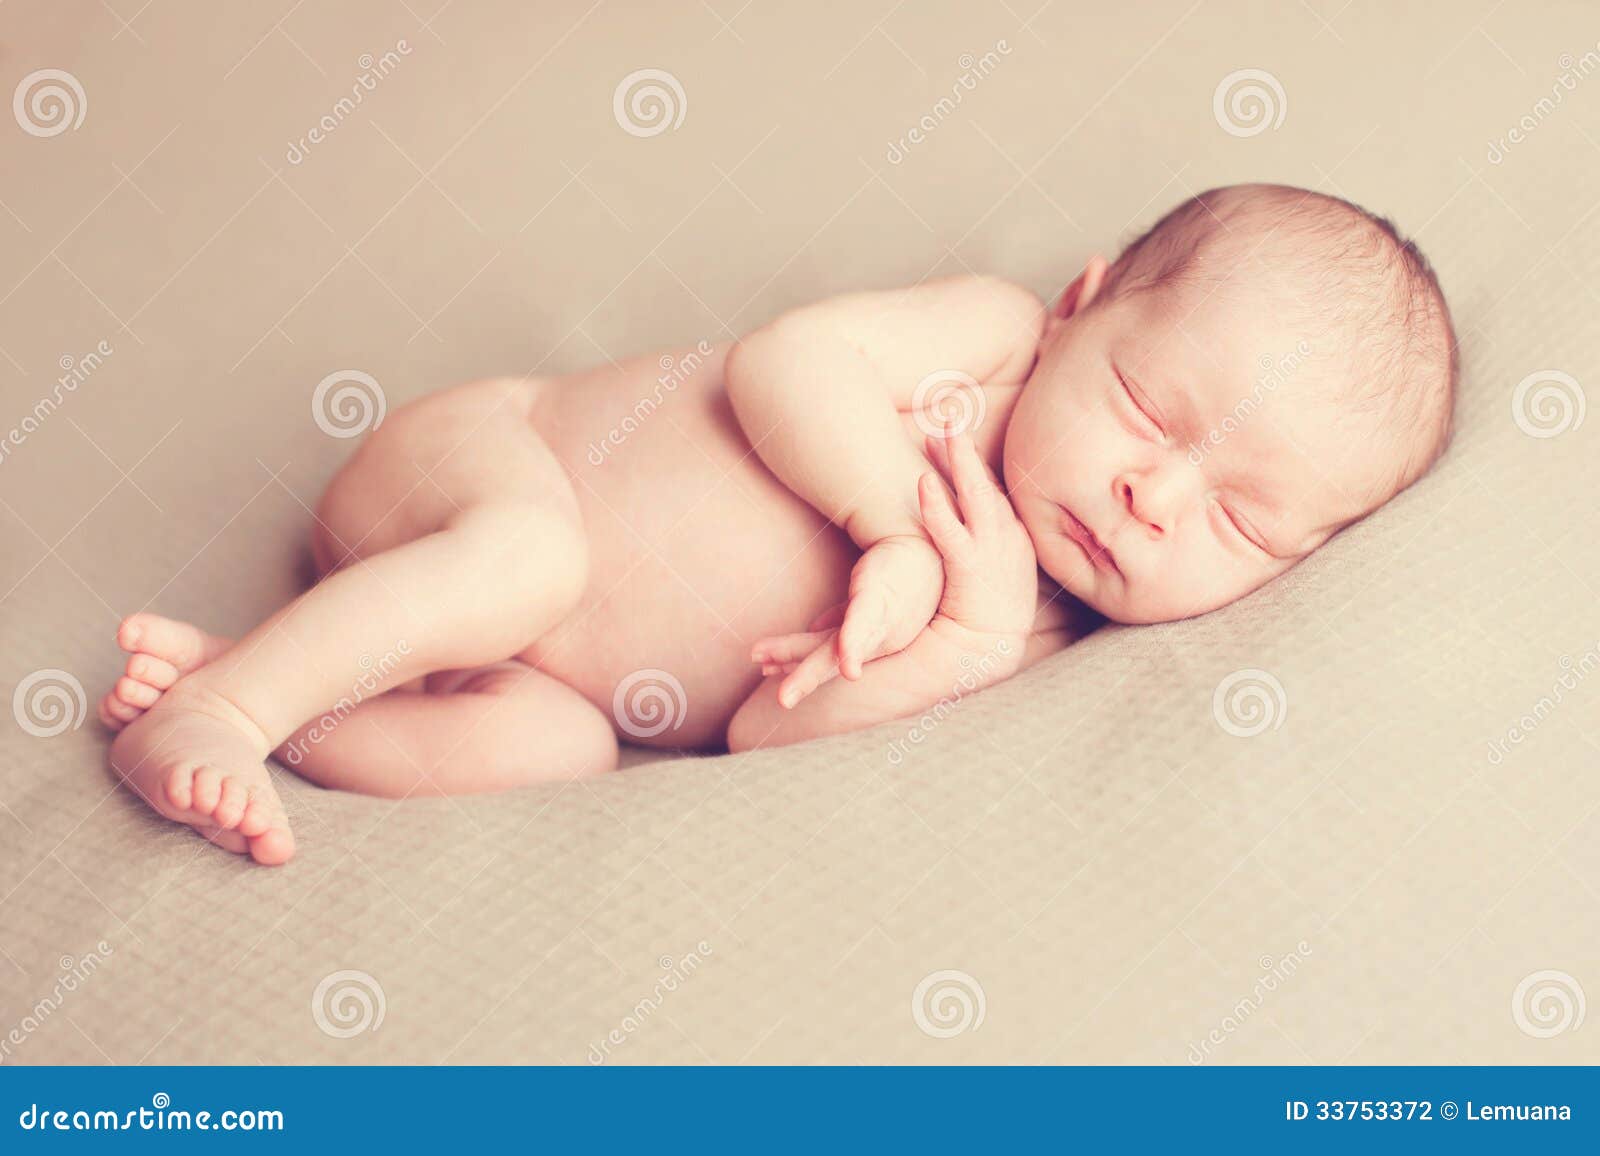 Bebé recién nacido niño pequeño fotografía foto utilería dormir wickeldecke y6s6